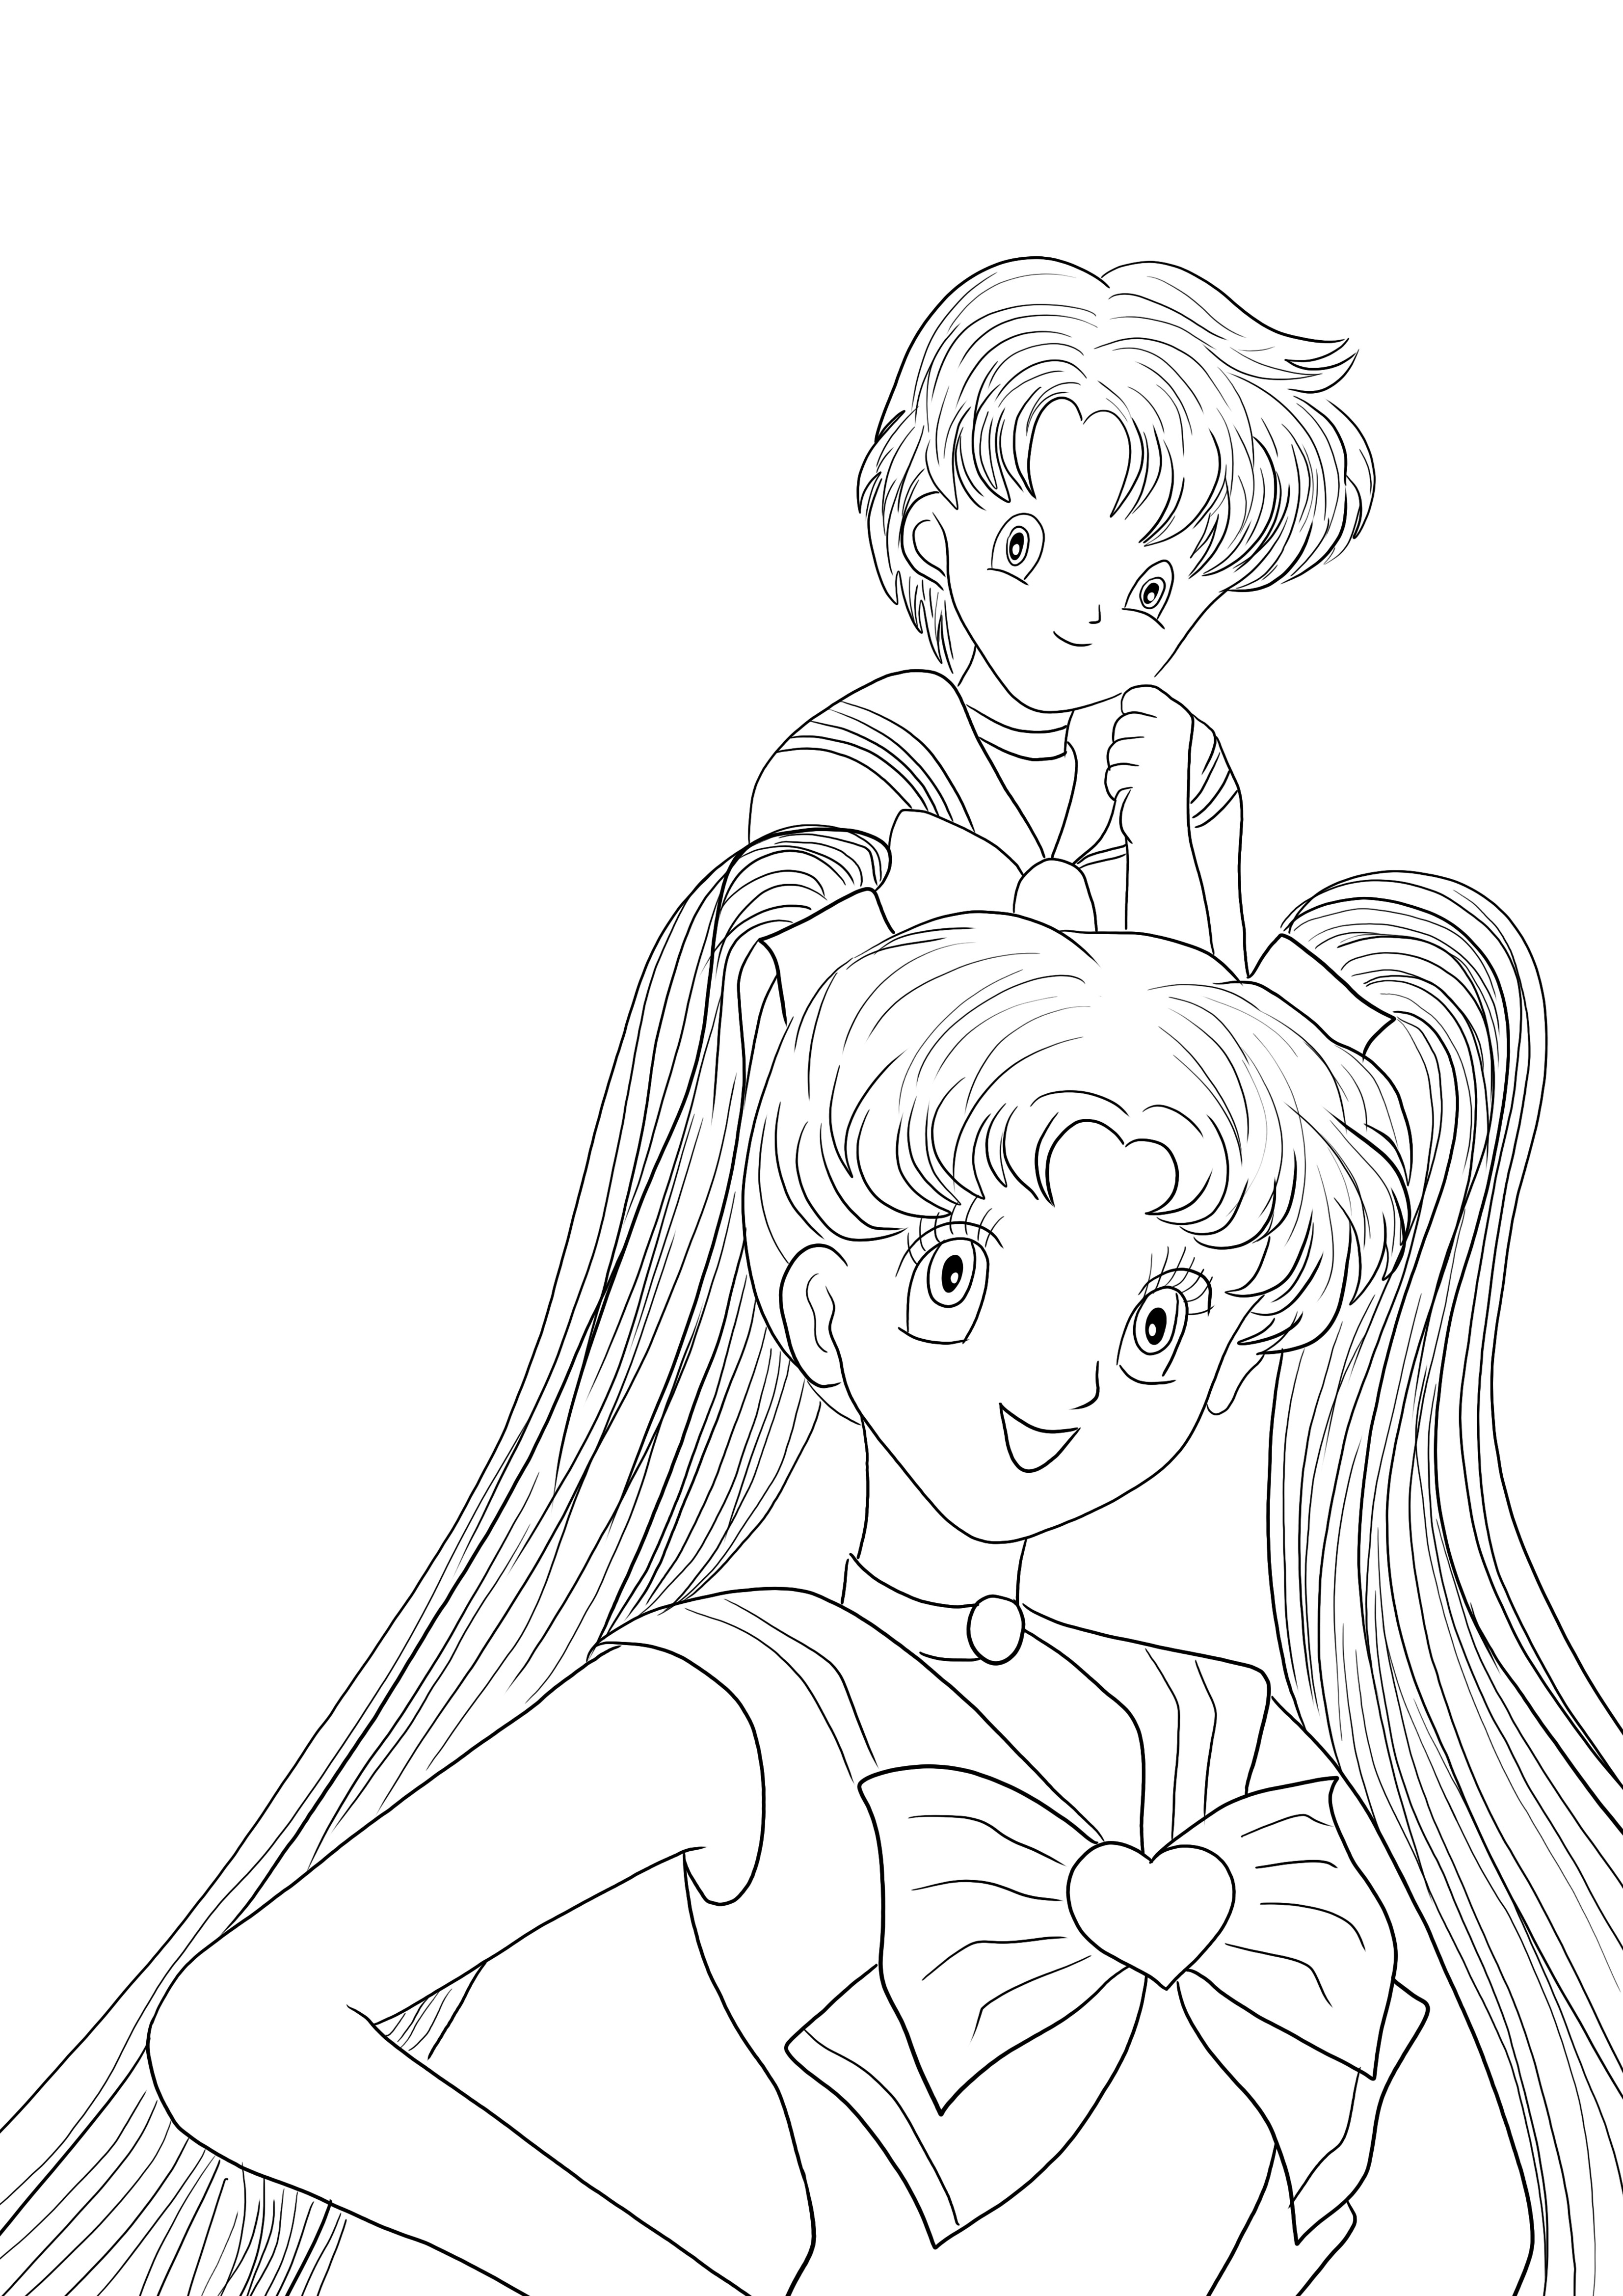 Ecco un foglio da colorare di Sailor Moon Girls da scaricare gratuitamente da colorare per i bambini